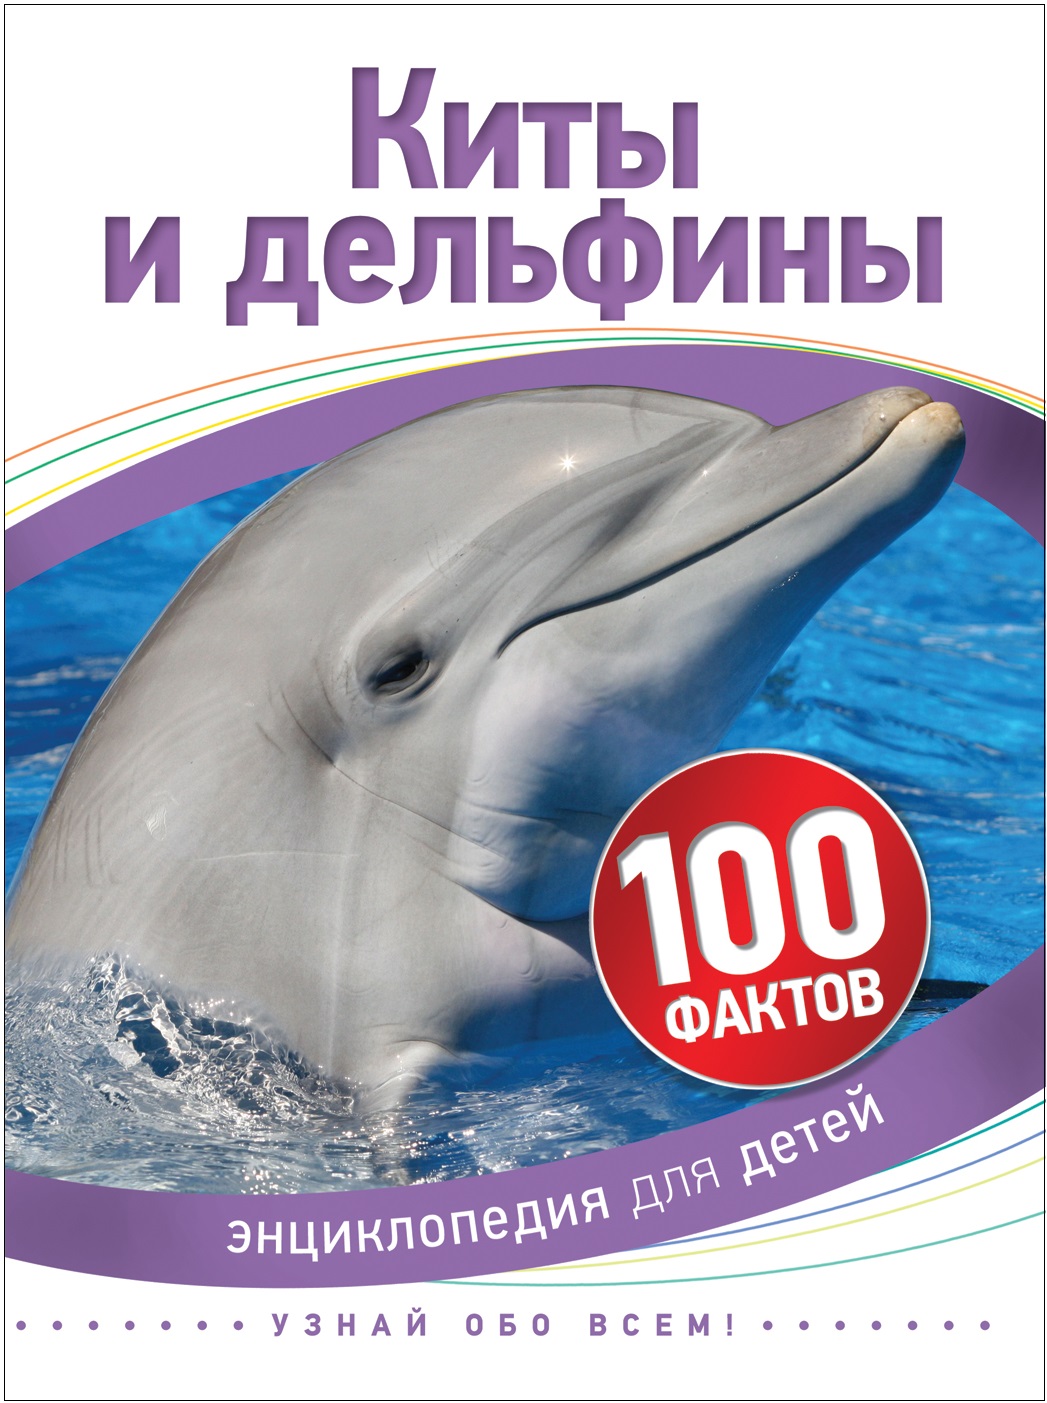 Книга 35069 "Киты и дельфины" 100 фактов Росмэн - Орск 